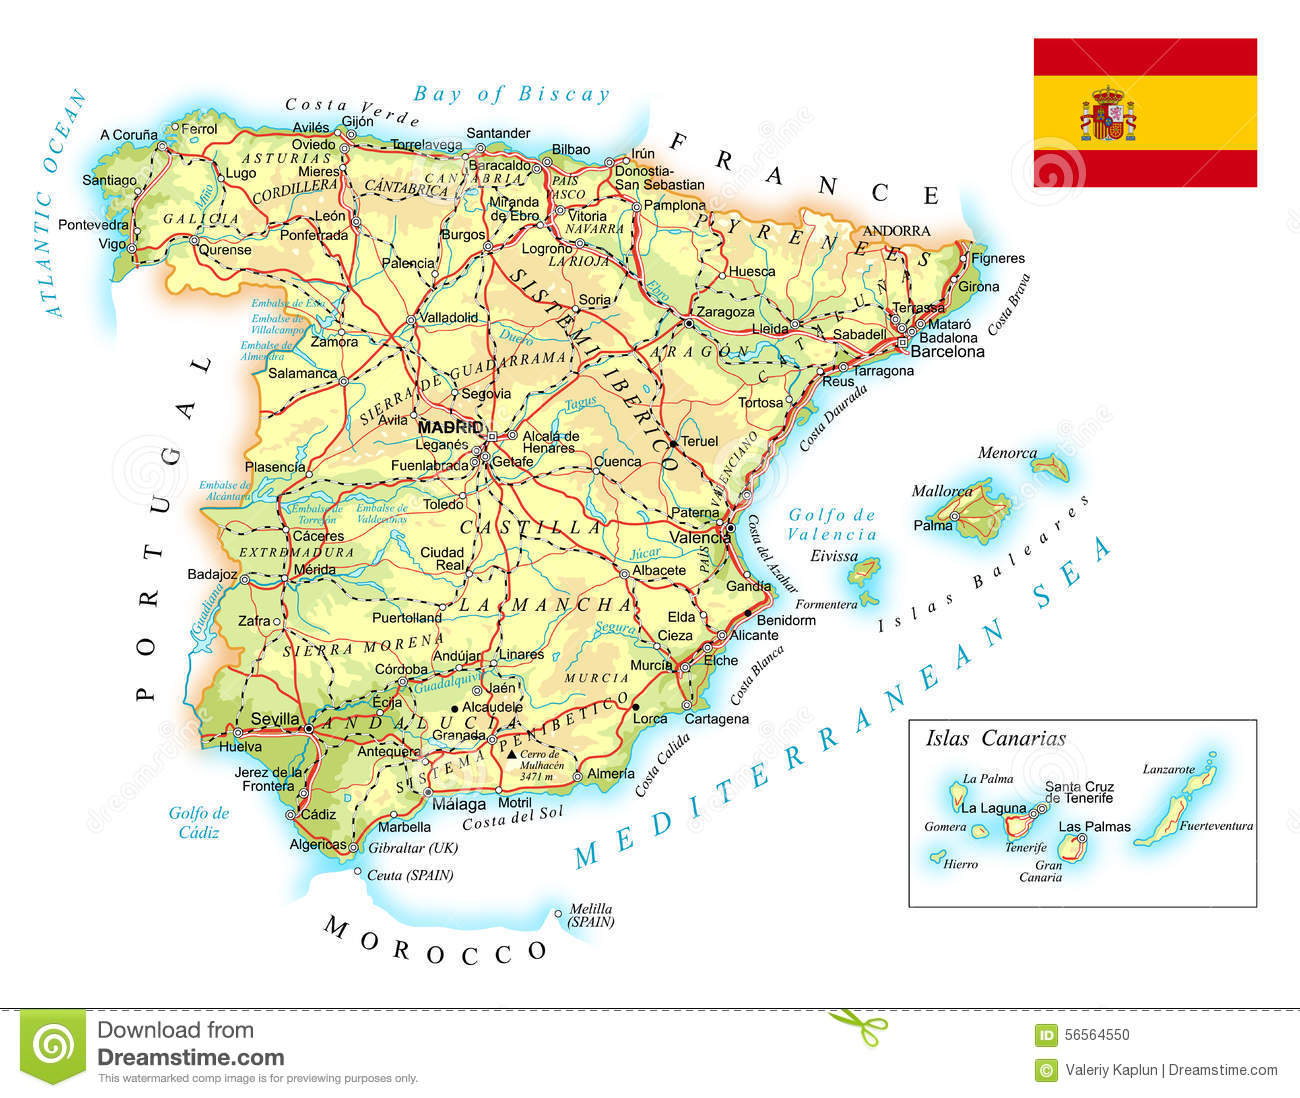 Carte pays basque espagnol détaillée